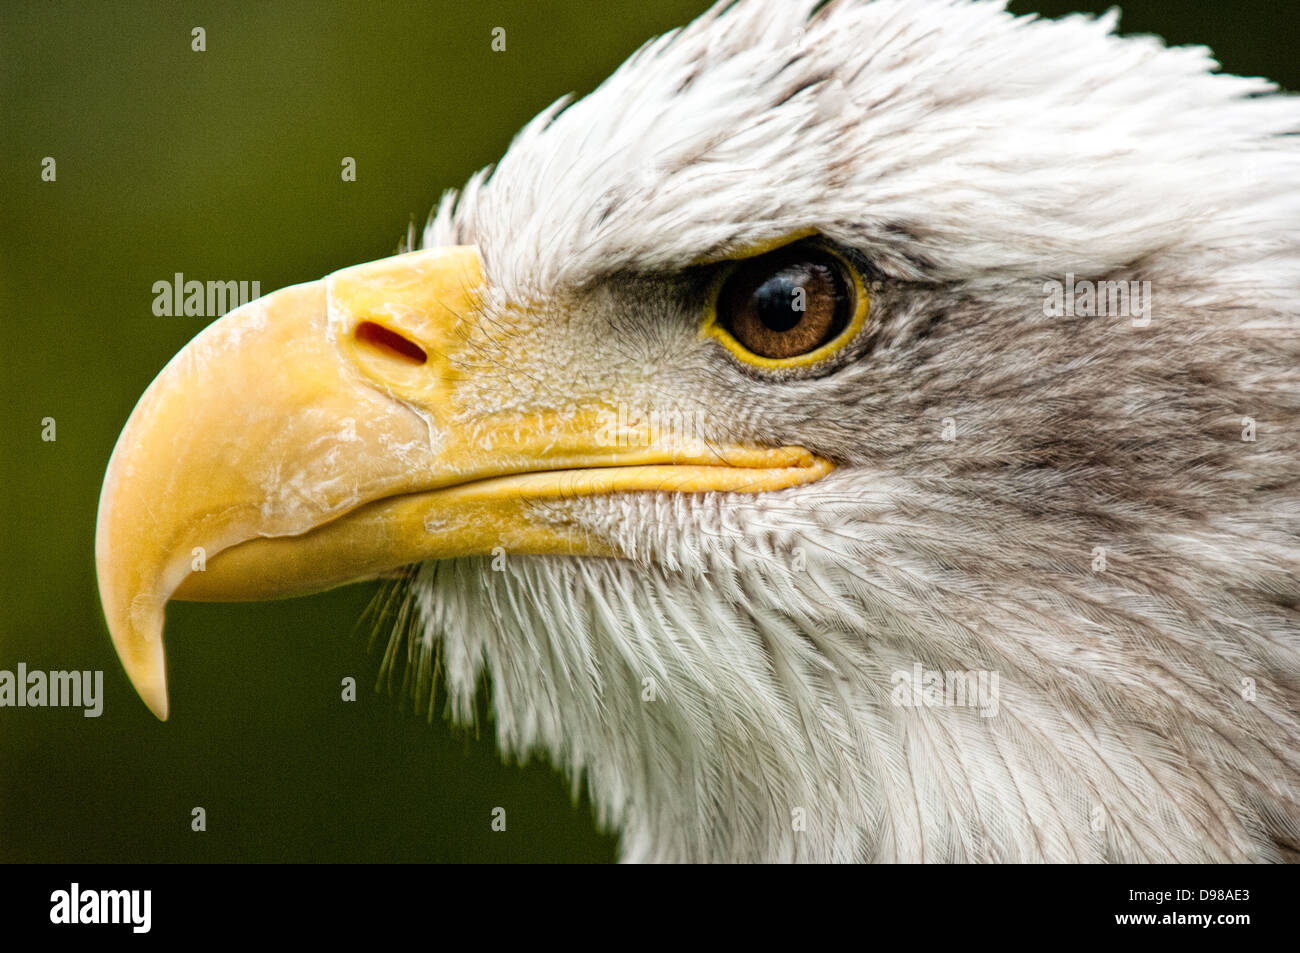 Un perfil retrato de un águila calva (Haliaeetus leucocephalus). También conocido como American Eagle, el símbolo nacional de los Estados Unidos. Foto de stock